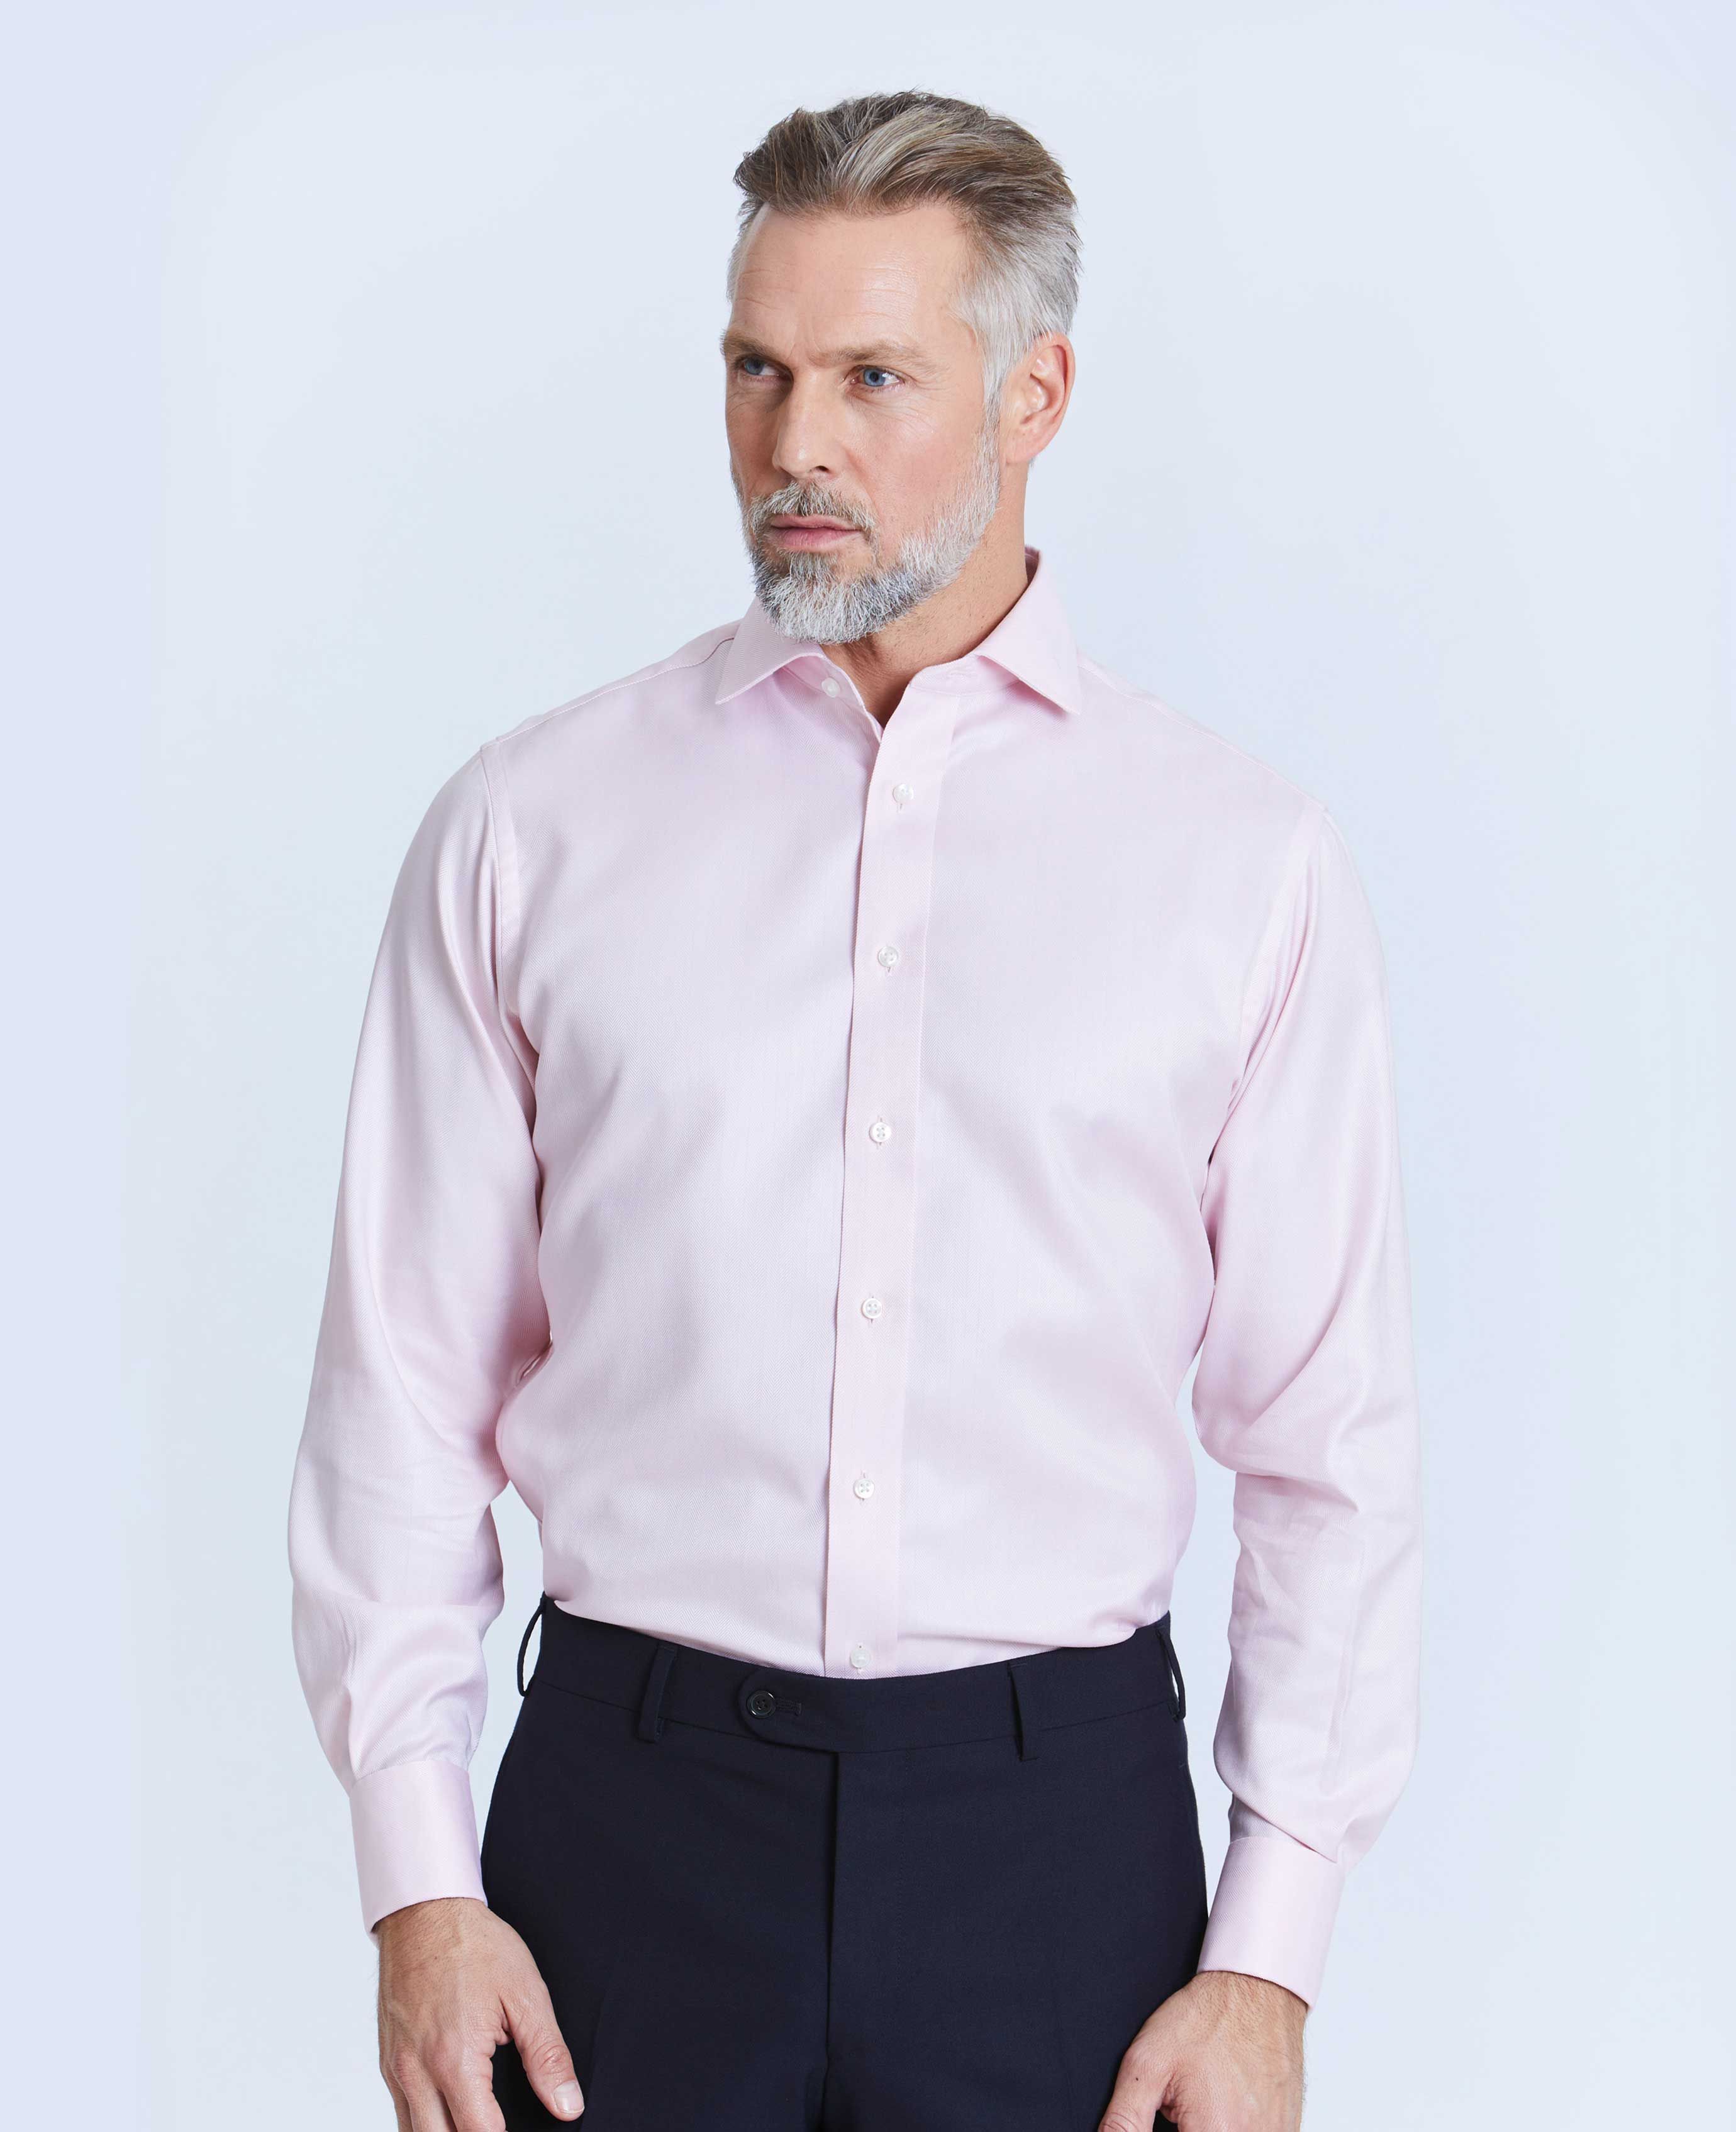 mens thomas pink shirts